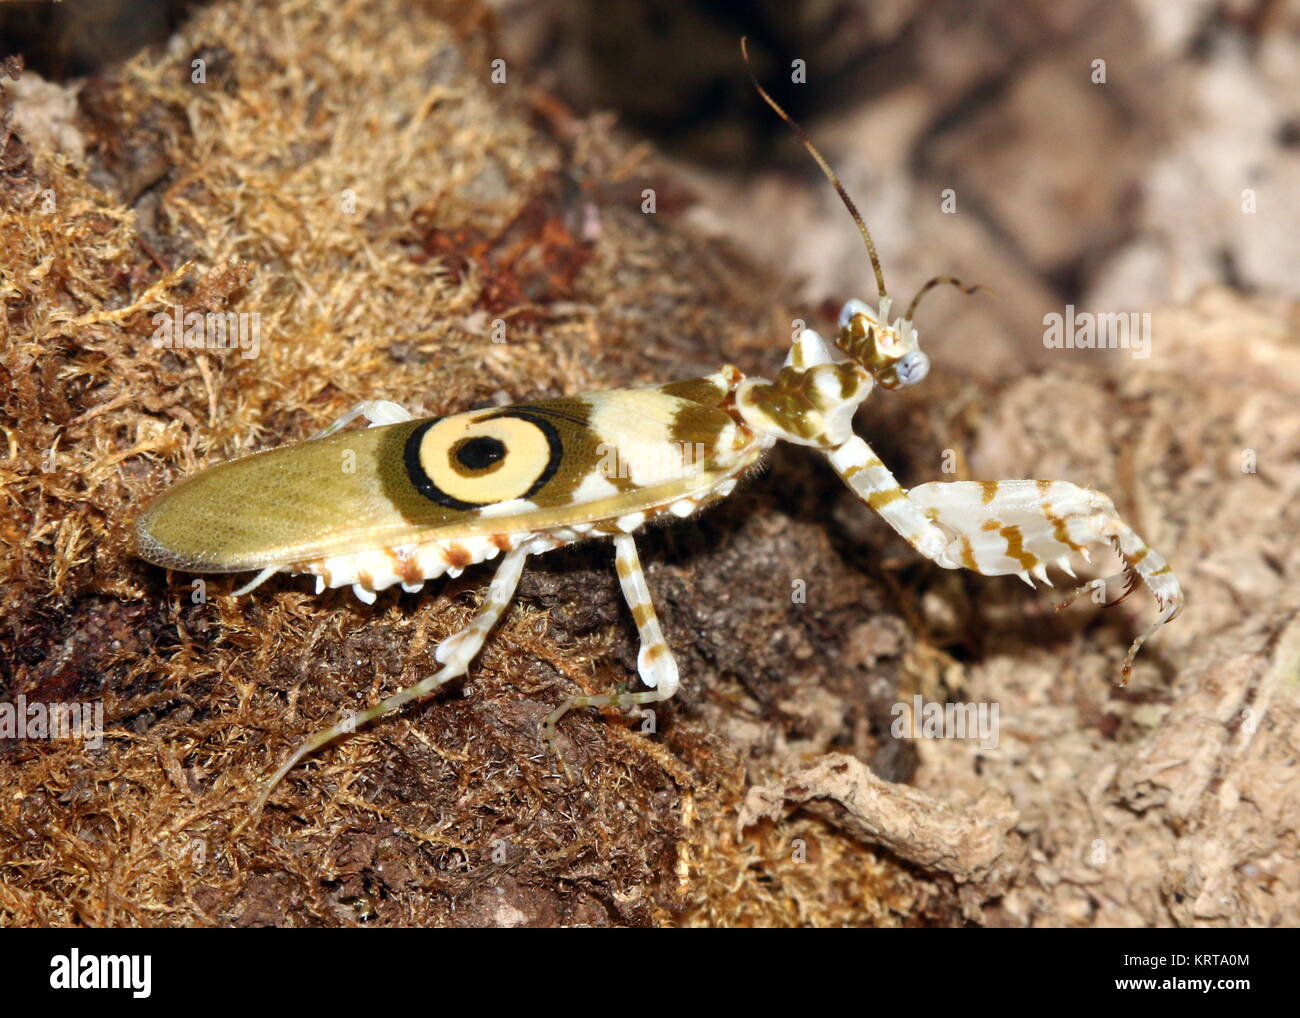 África oriental flor Espinosa (mantis Pseudocreobotra wahlbergi) caminando Foto de stock